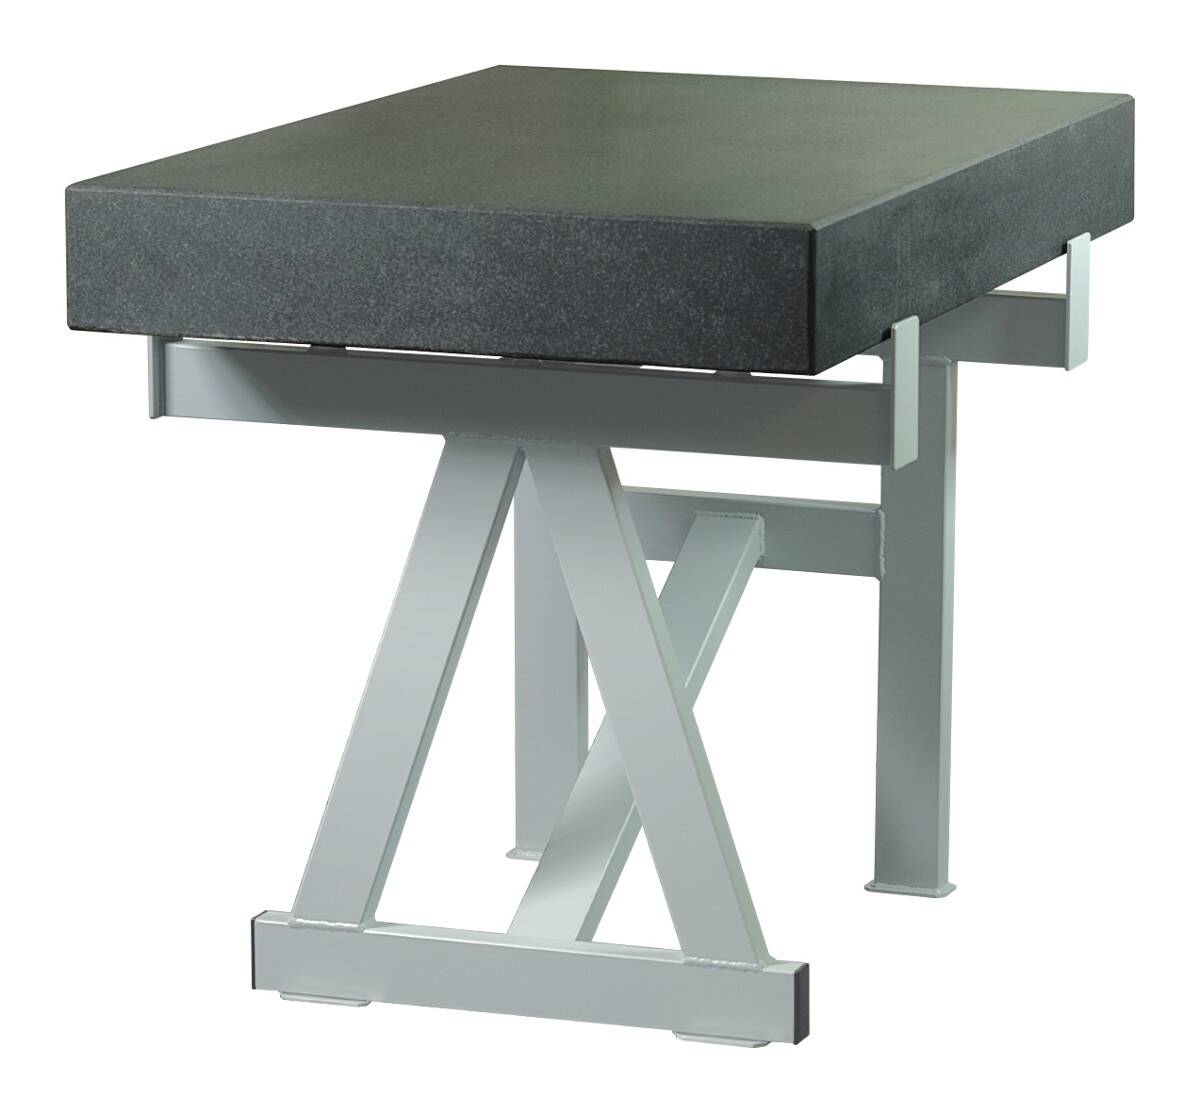 SCHUT stół do płyty pomiarowej żeliwnej 1200x800mm 131.041